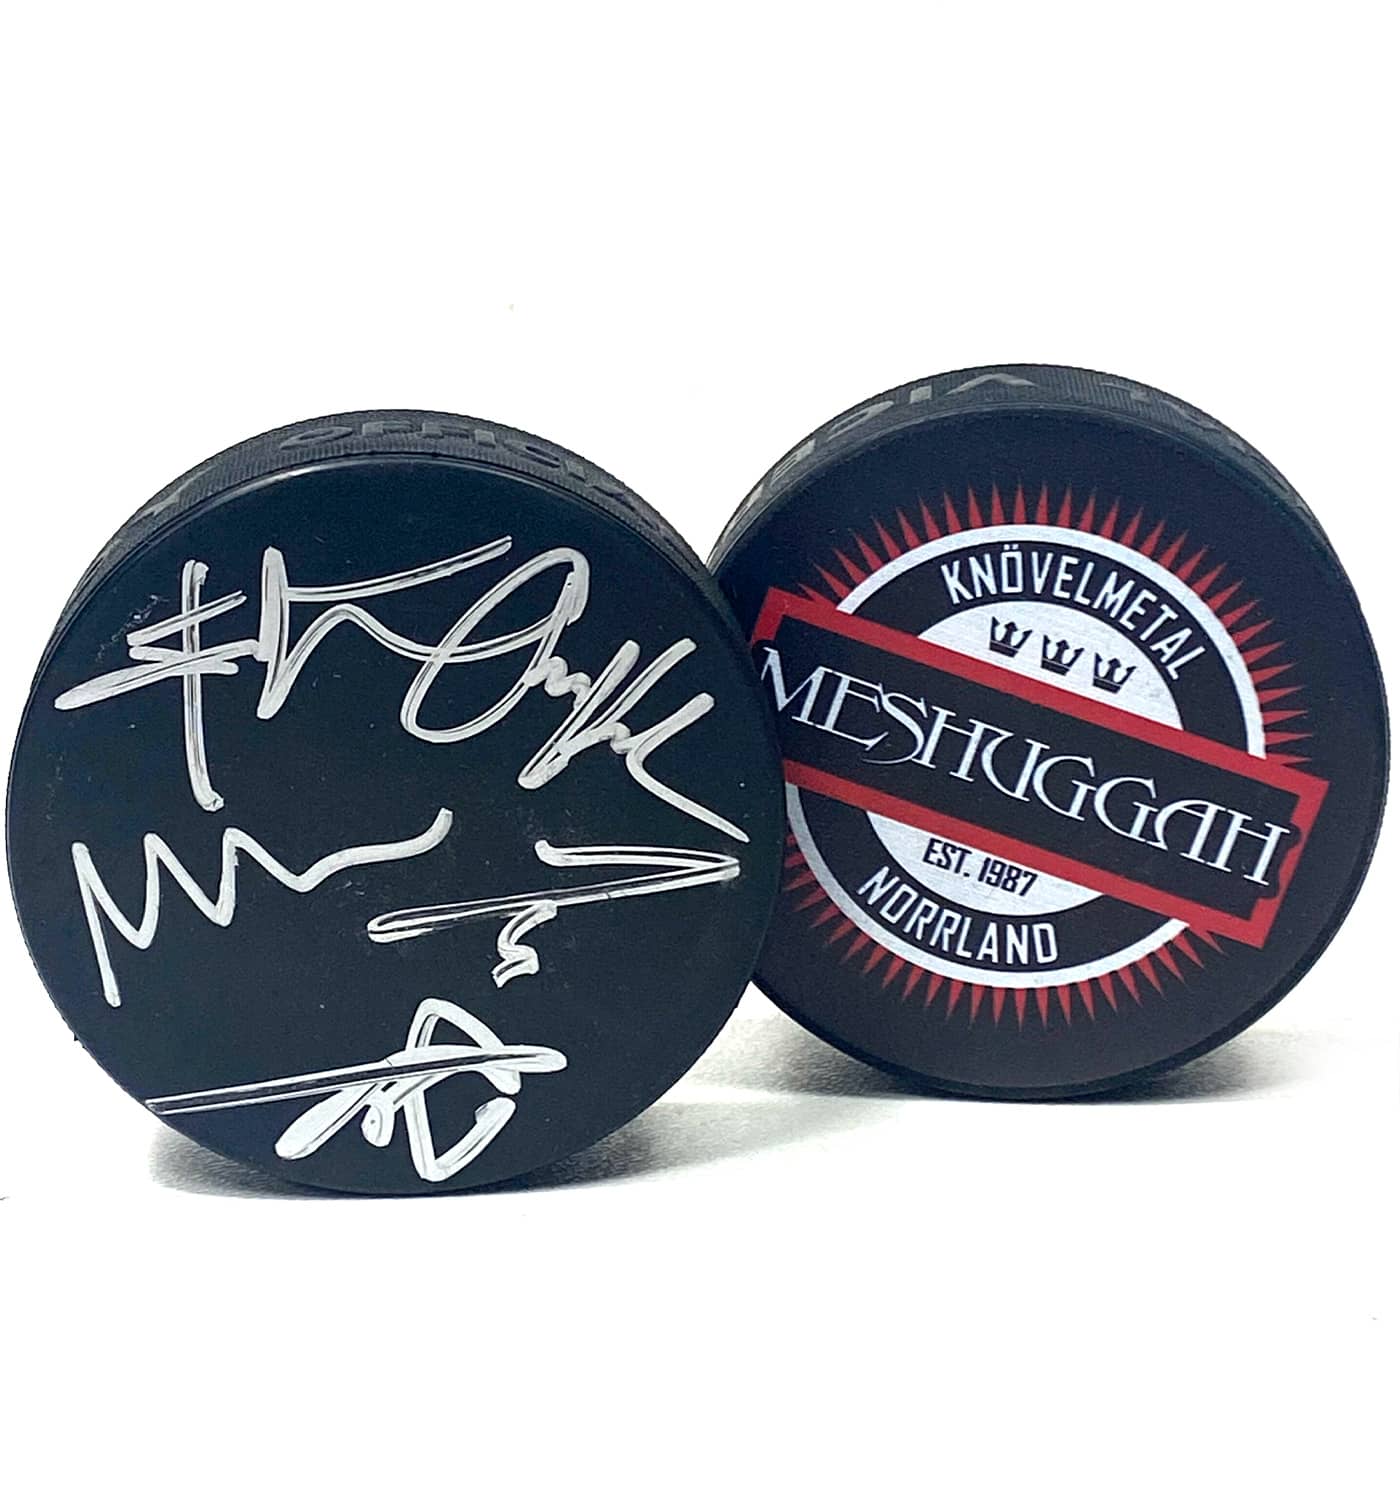 MESHUGGAH 'KNÖVELMETAL' limited edition autographed hockey puck